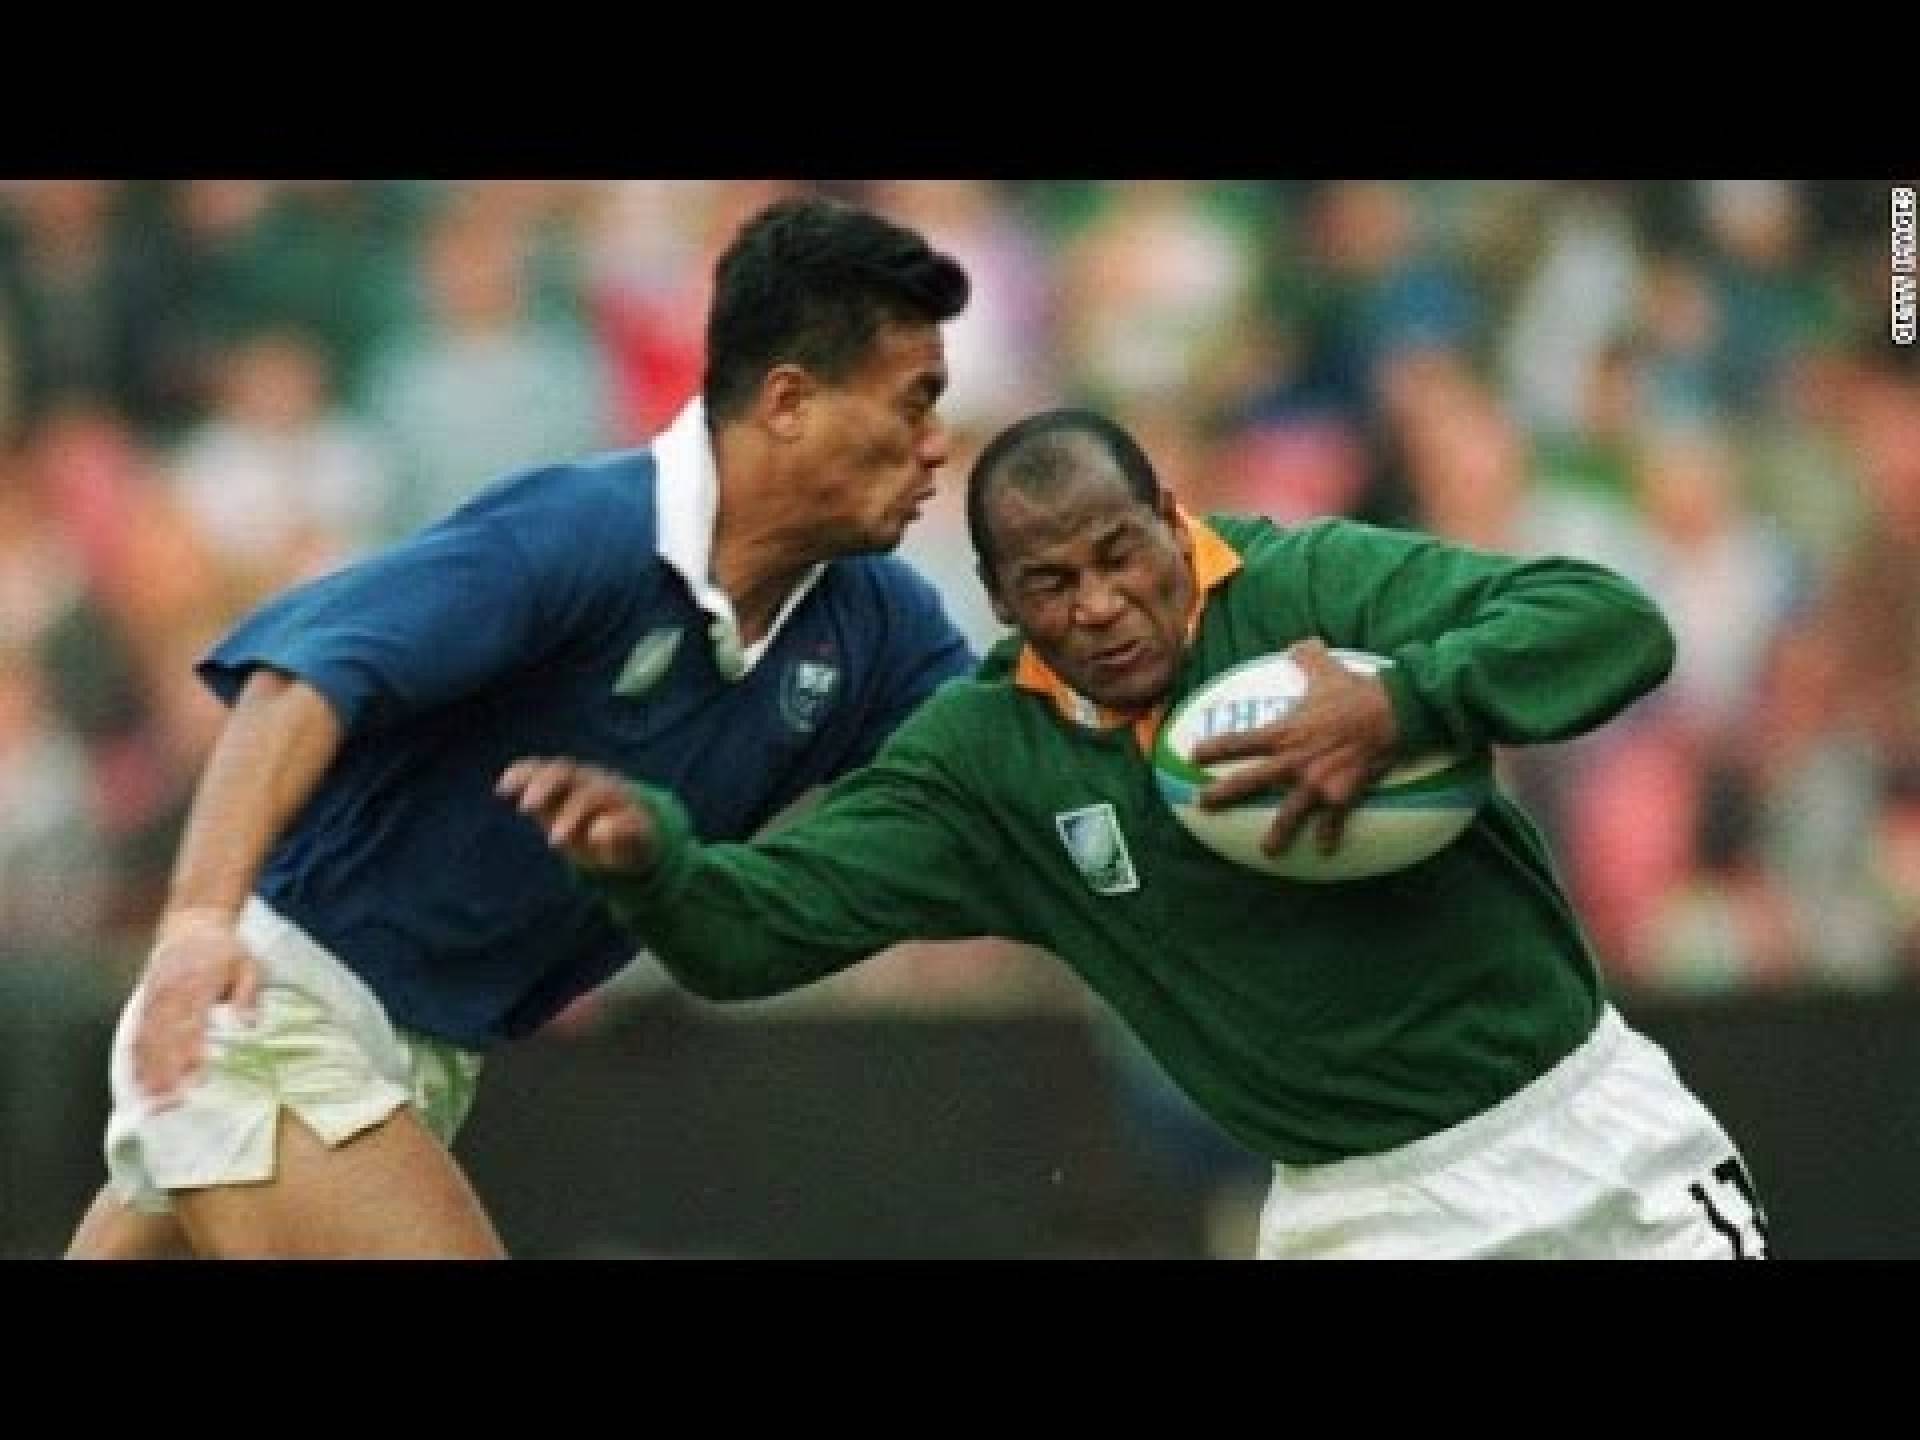 Morre Chester Williams, primeiro negro campeão mundial de Rugby